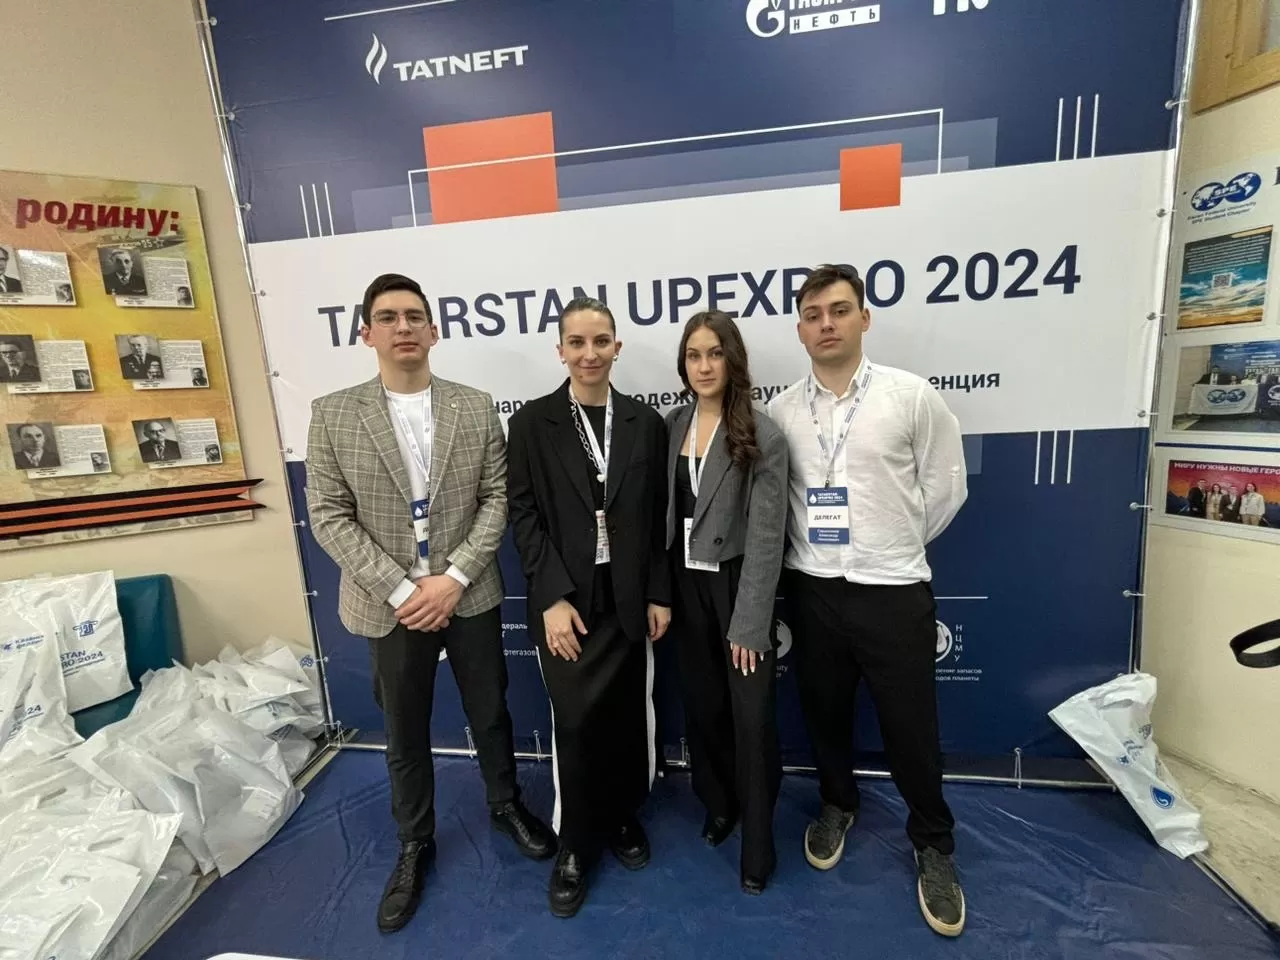 ВШН на VII Международной молодежной научной конференции «Tatarstan UpExPro 2024»